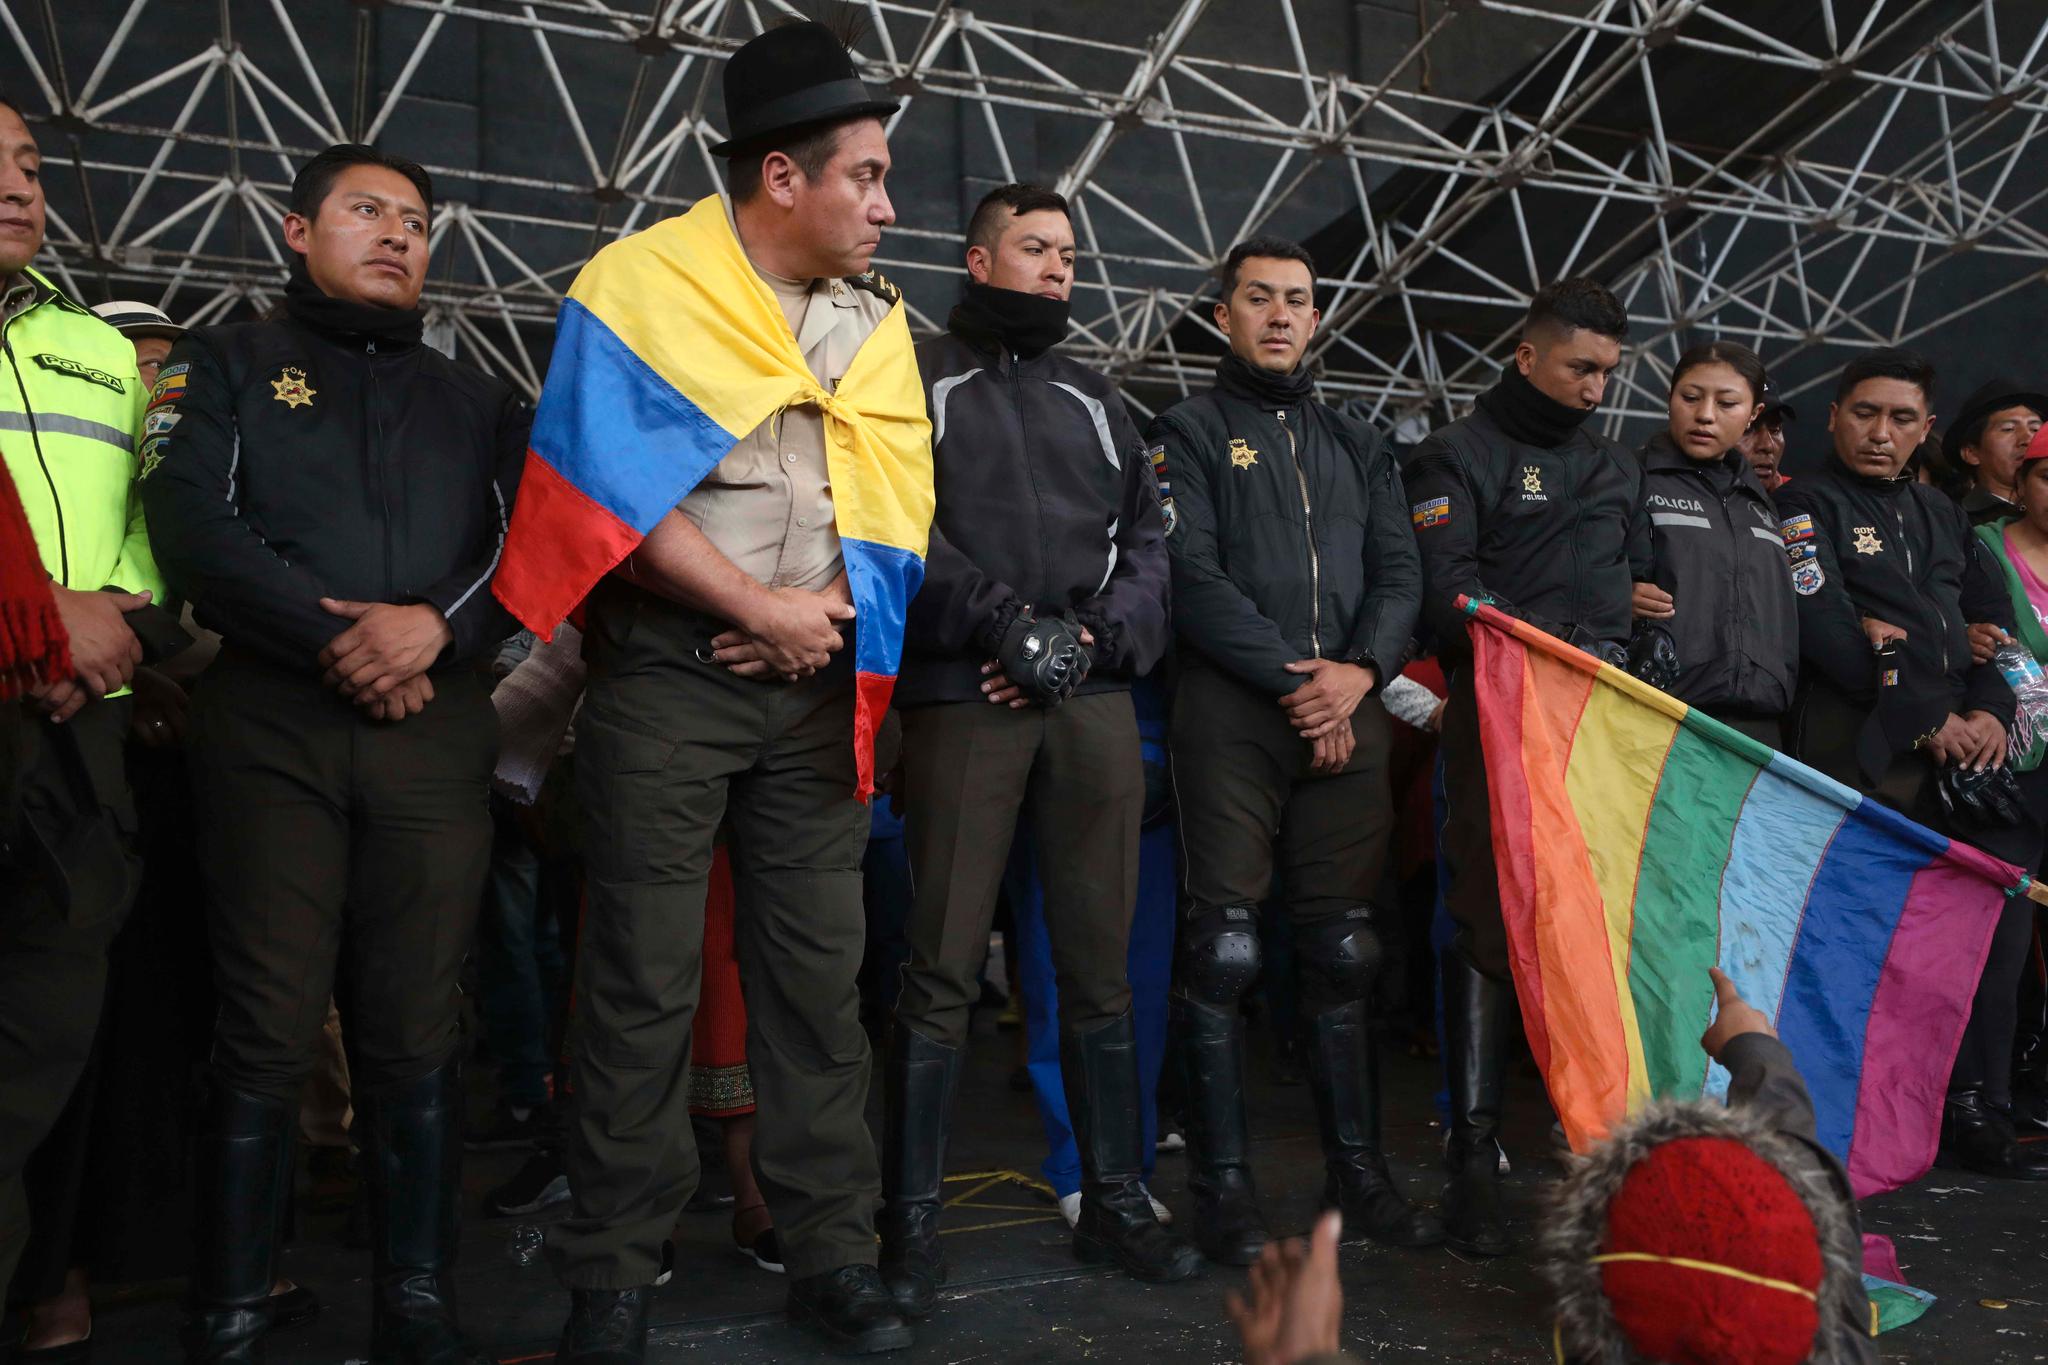 En gruppe politifolk som ble tatt til fange av demonstranter under protestaksjonene i Ecuador, blir her vist fram av gruppen som tok dem som gisler. Foto: AP / NTB scanpix